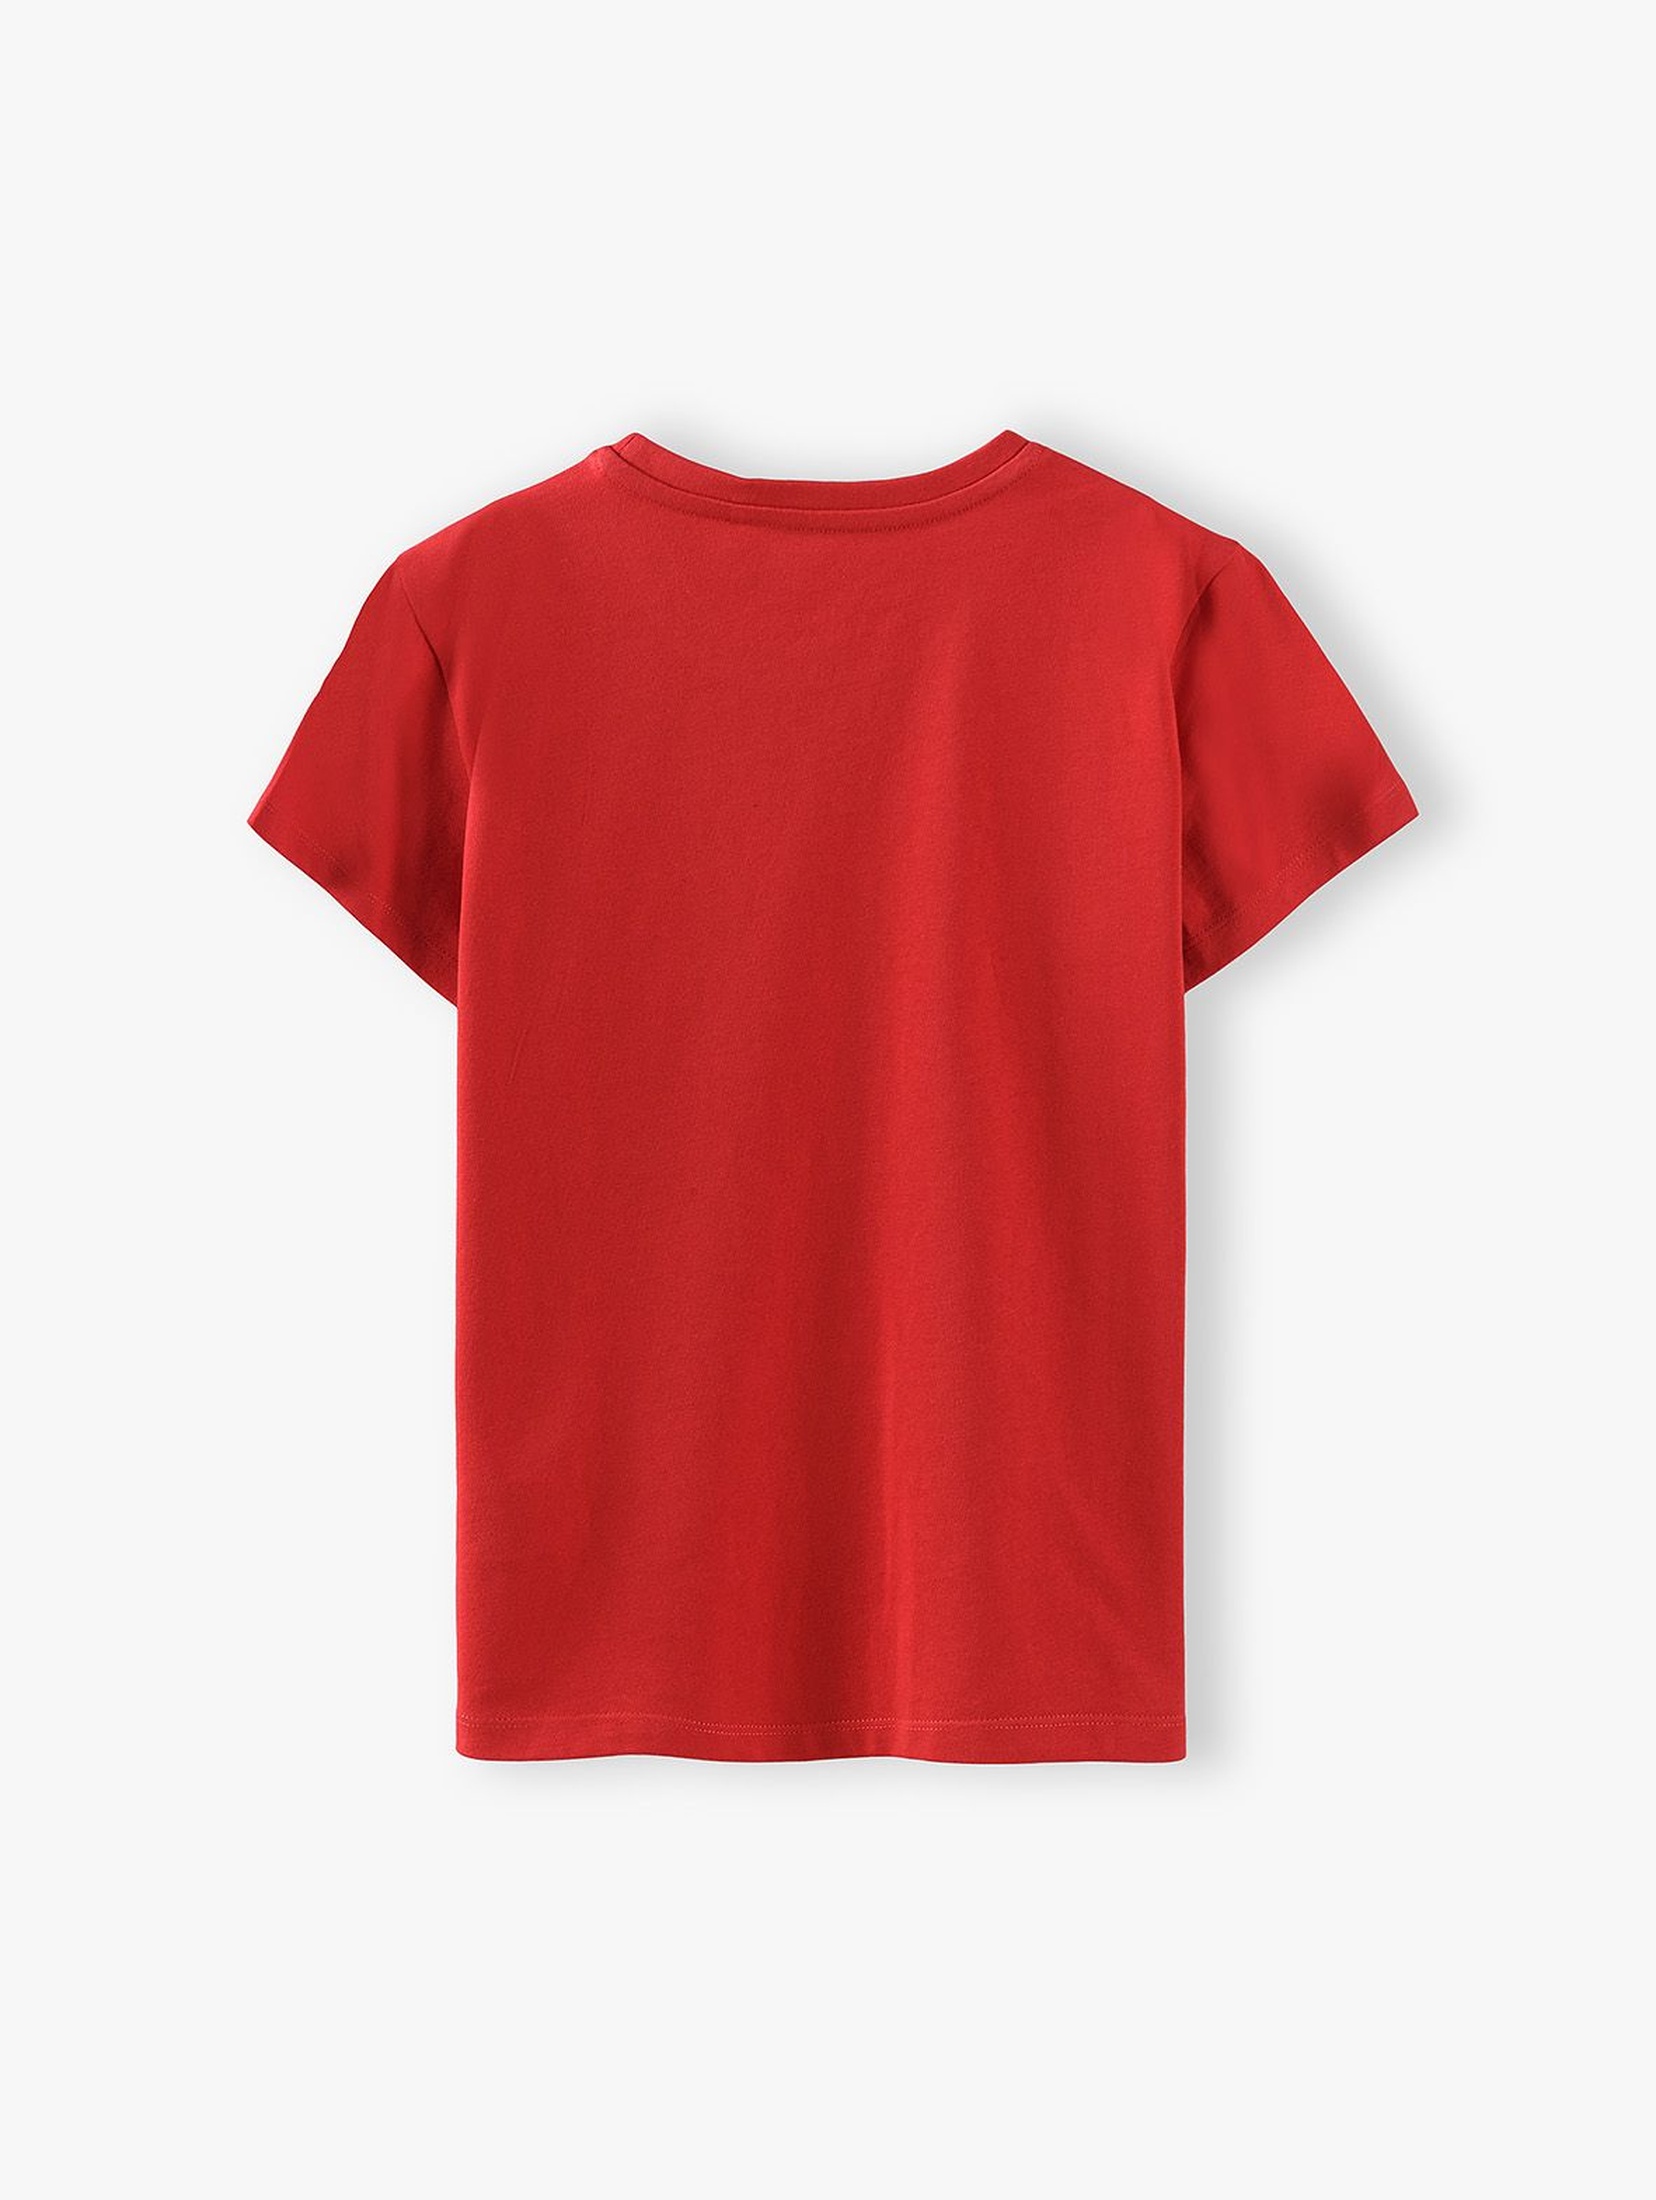 T-shirt chłopięcy czerwony- Wszystko Gra